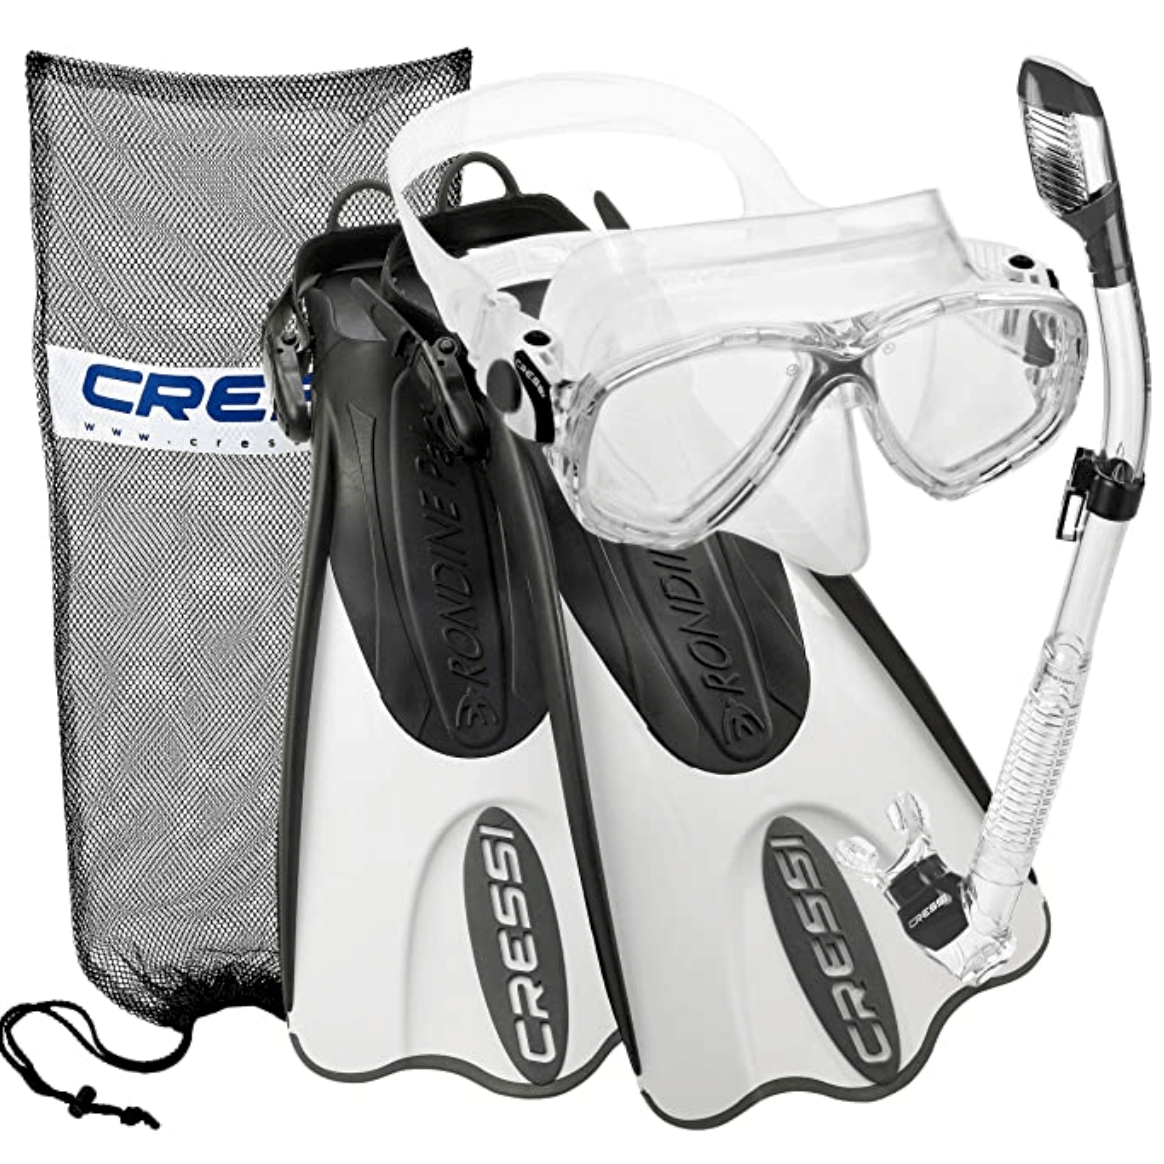 we also love this snorkel set